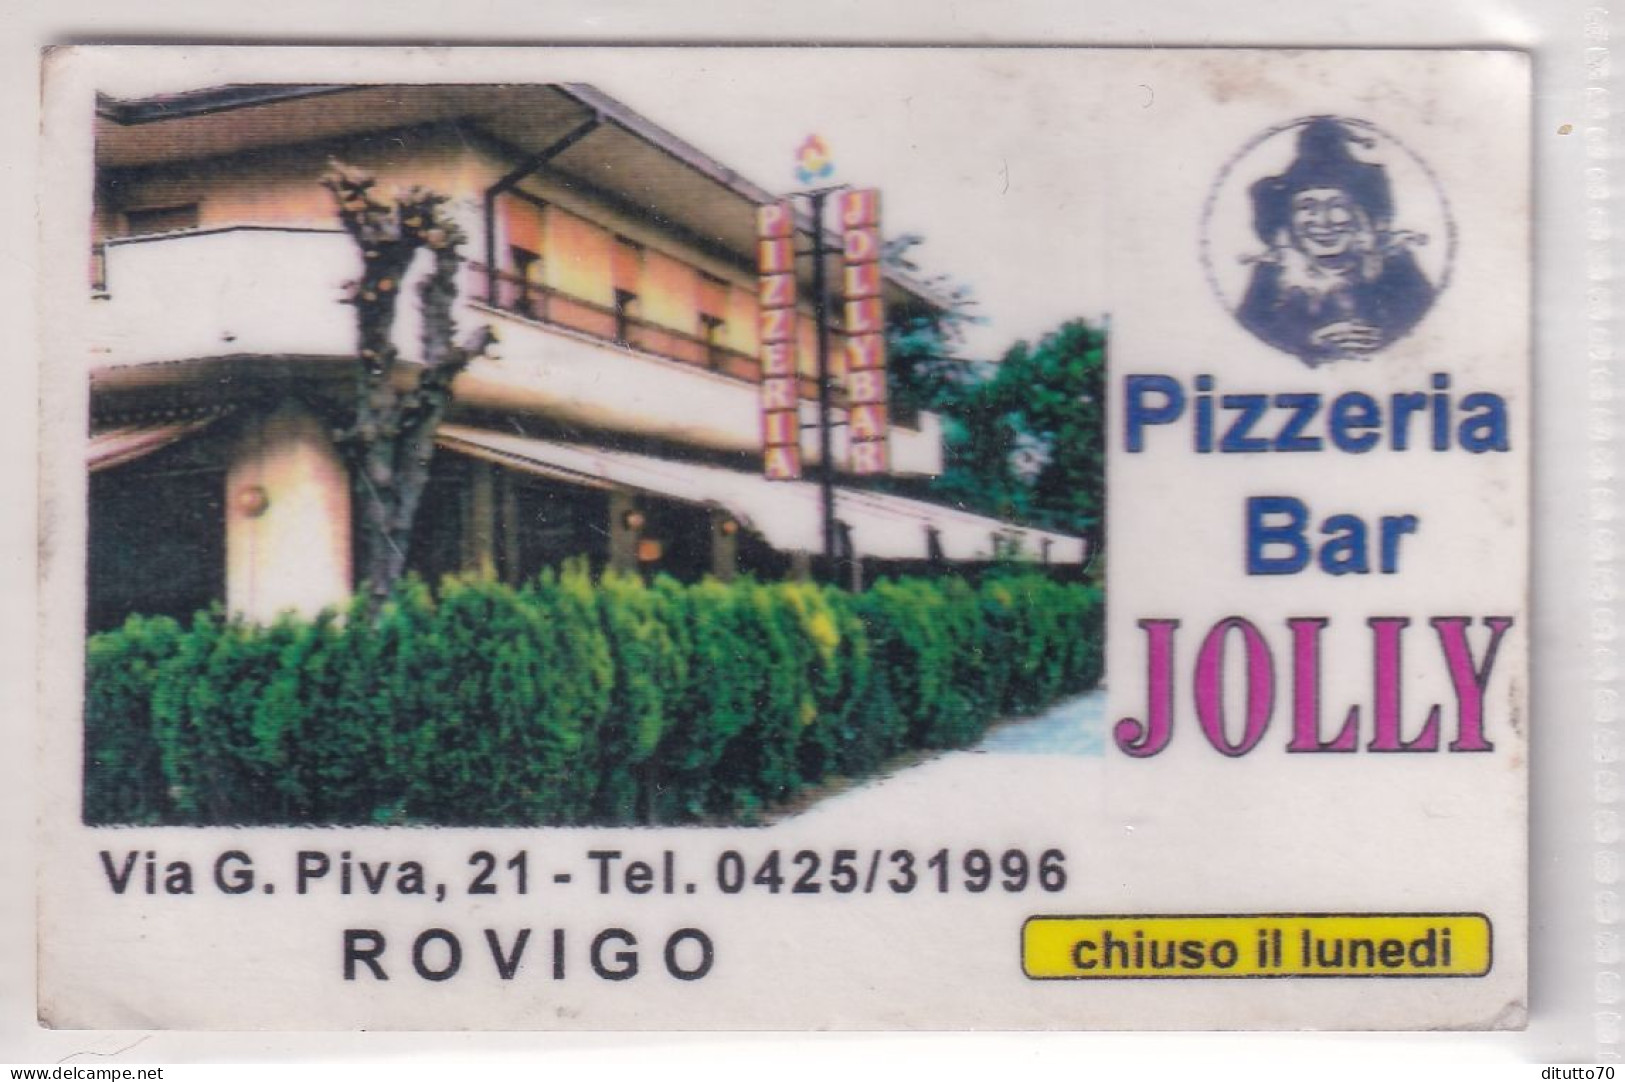 Calendarietto - Pizzeria Bar Jolly - Rovigo - Anno 1997 - Formato Piccolo : 1991-00